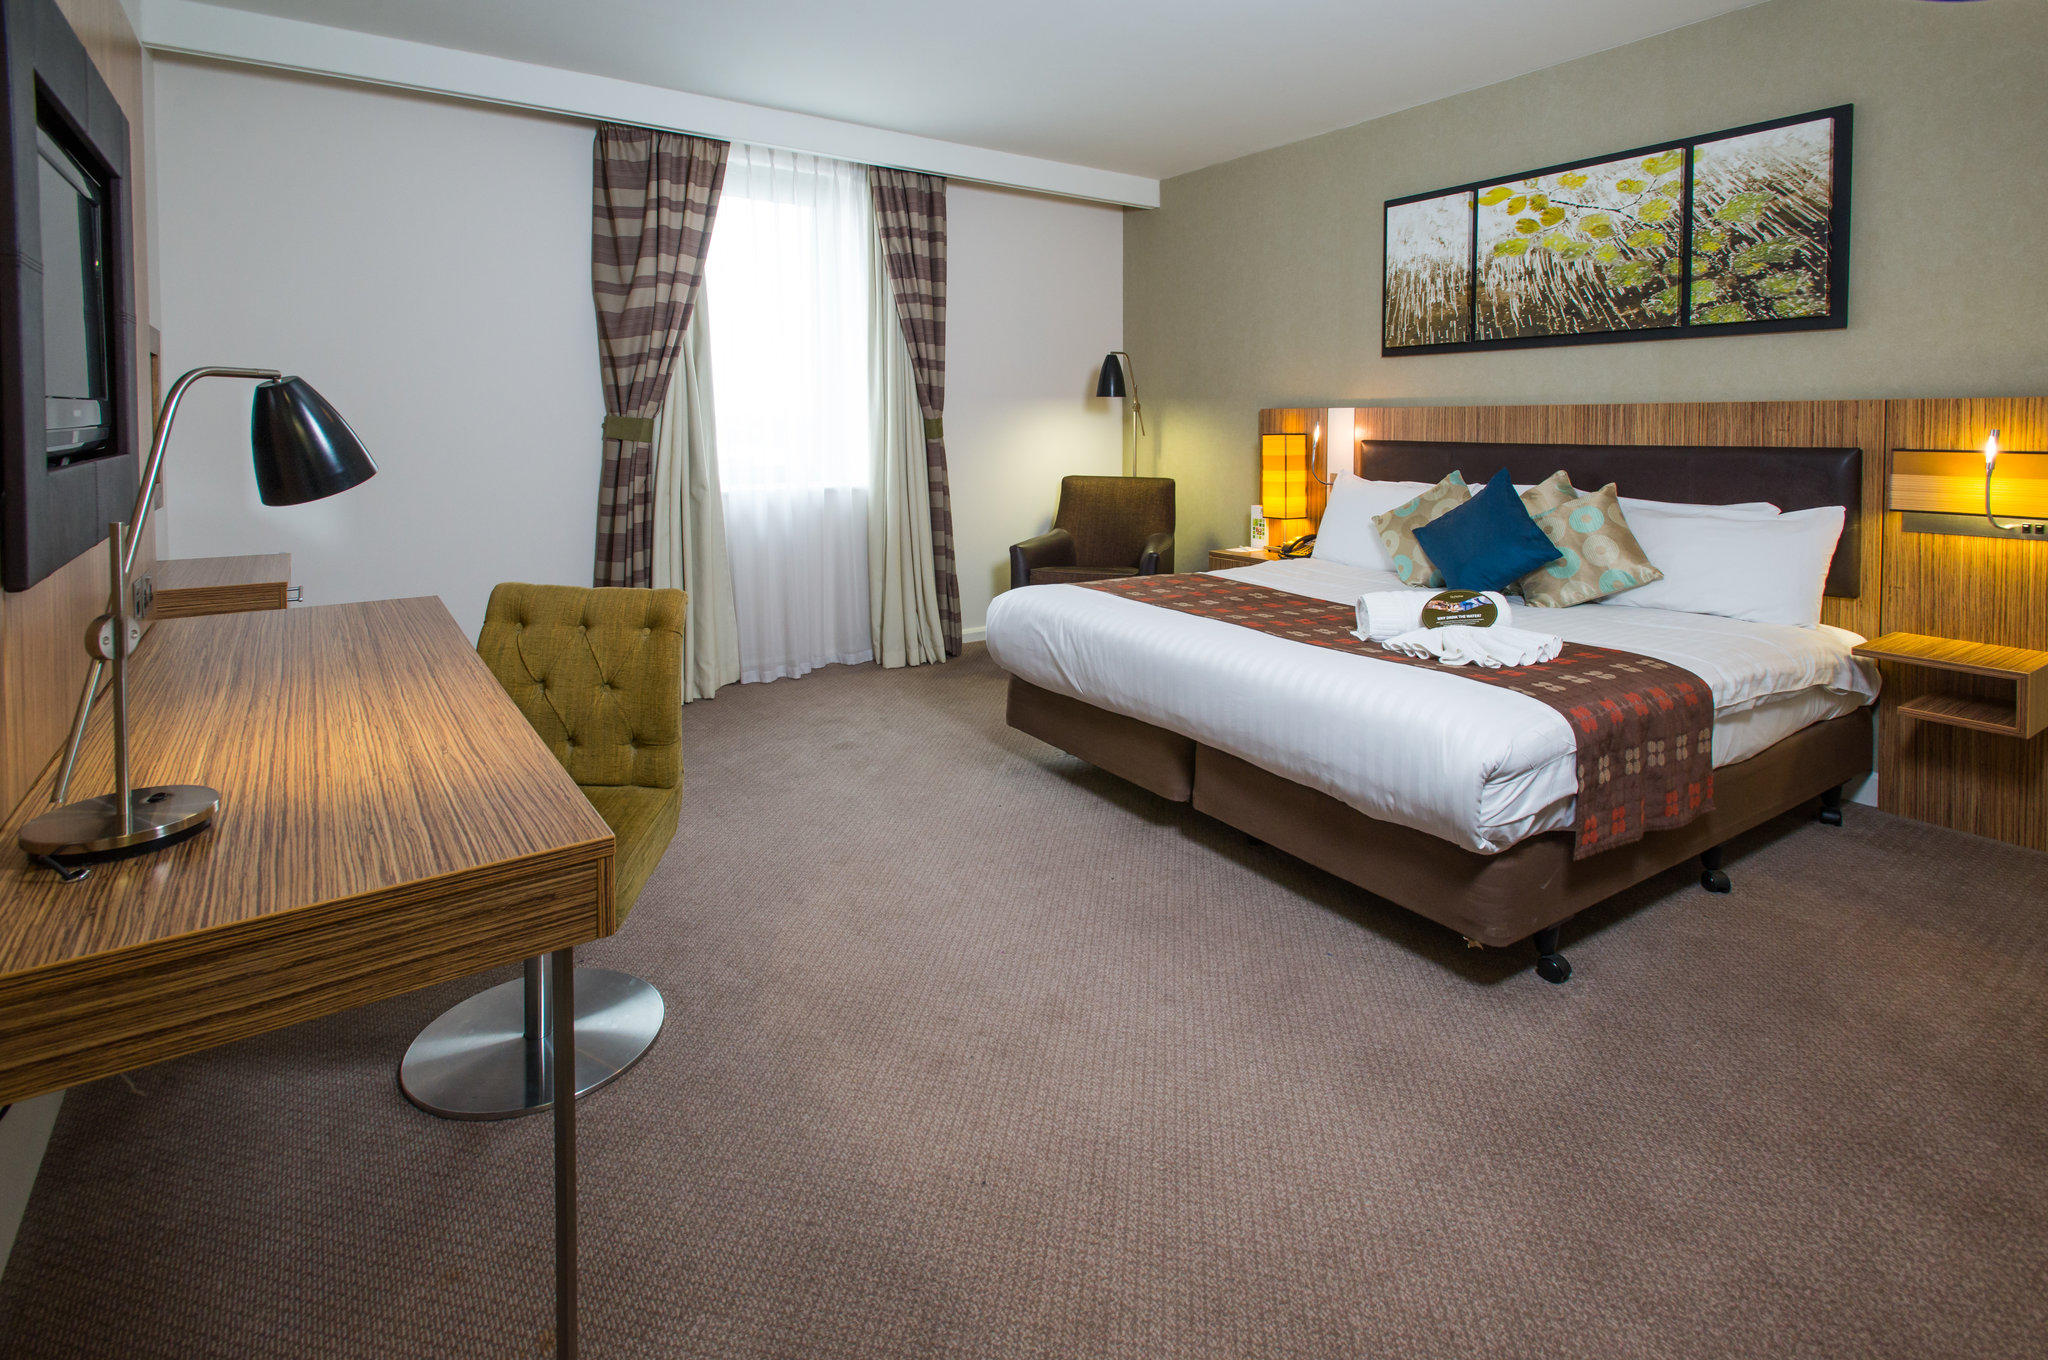 Holiday Inn Stevenage, an IHG Hotel Stevenage 01438 722727